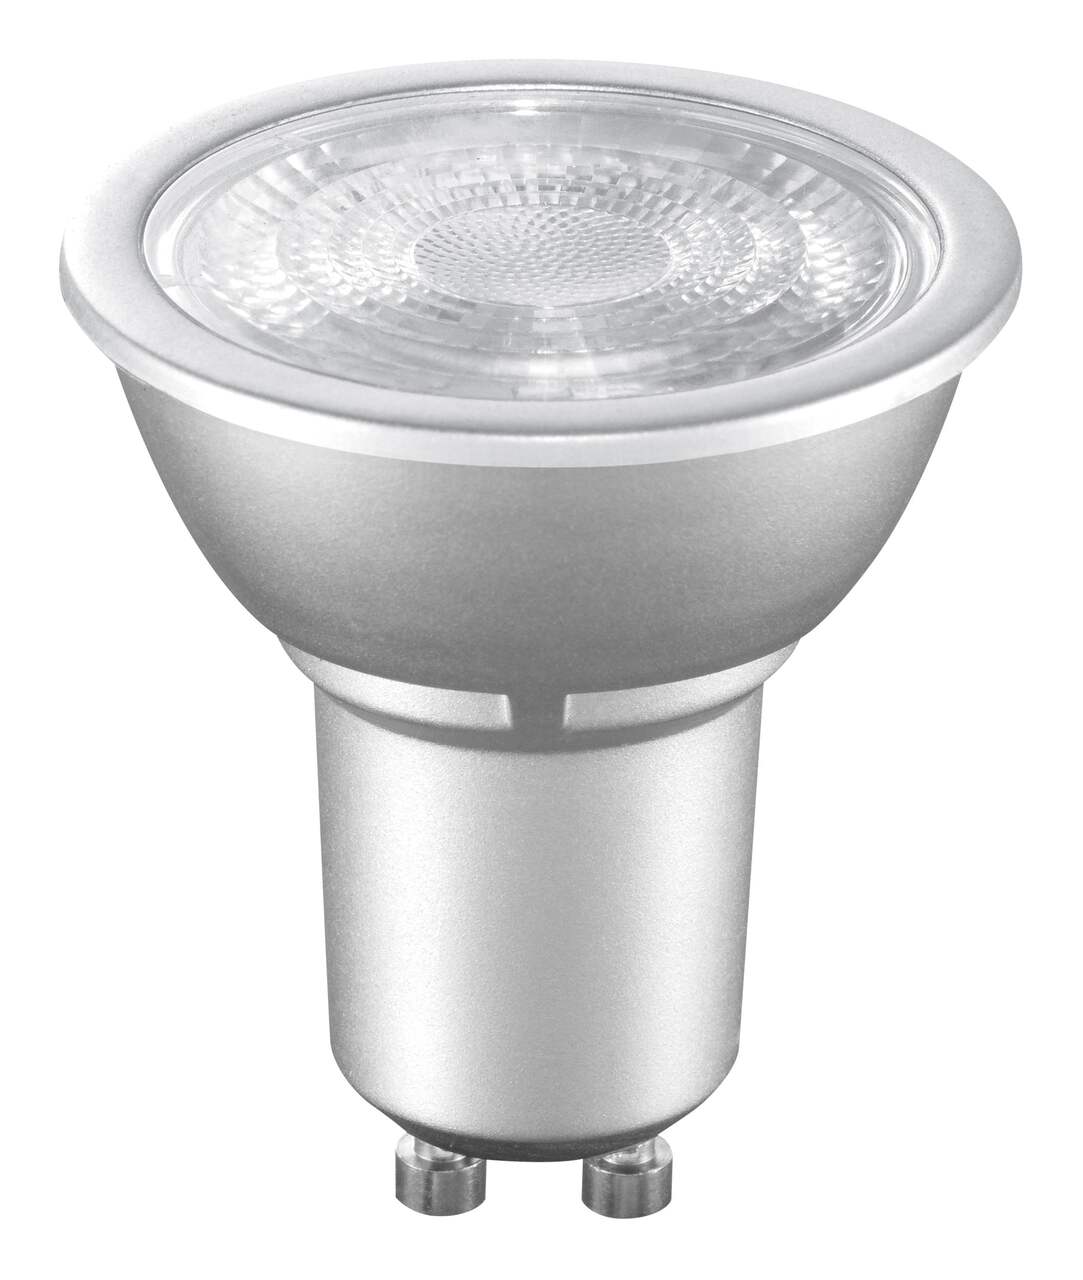 180153  Ampoule à LED avec réflecteur GU10 Orbitec, 4 W, 40 lm